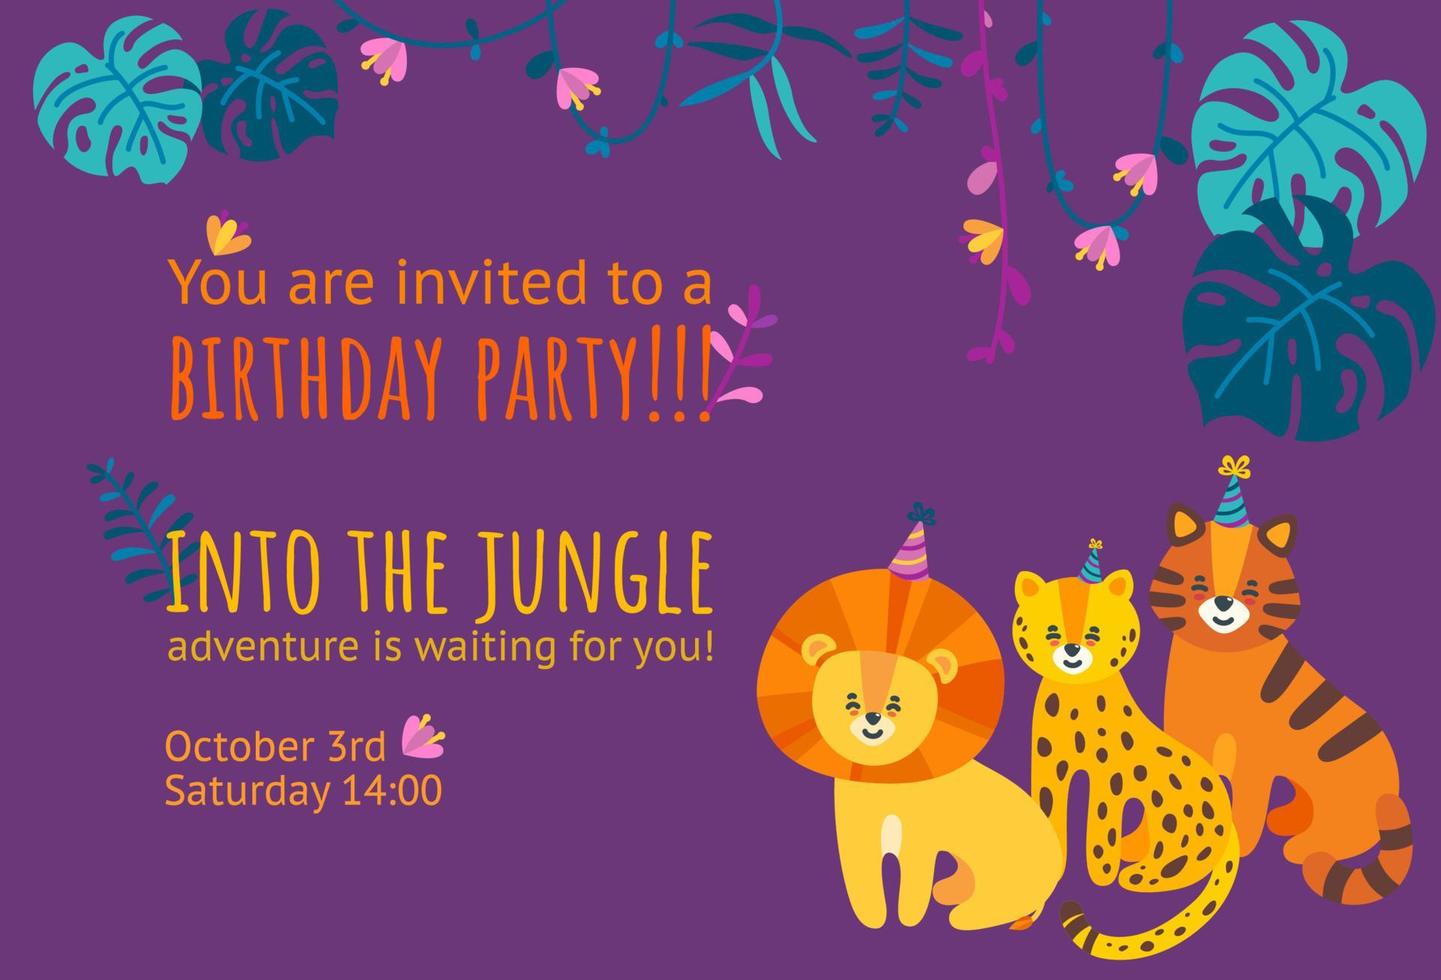 verjaardag uitnodiging kaart met tijger, luipaard en leeuw. kant en klaar uitnodiging ontwerp voor verjaardag partijen. falt vector illustratie met oerwoud bladeren en lianen.